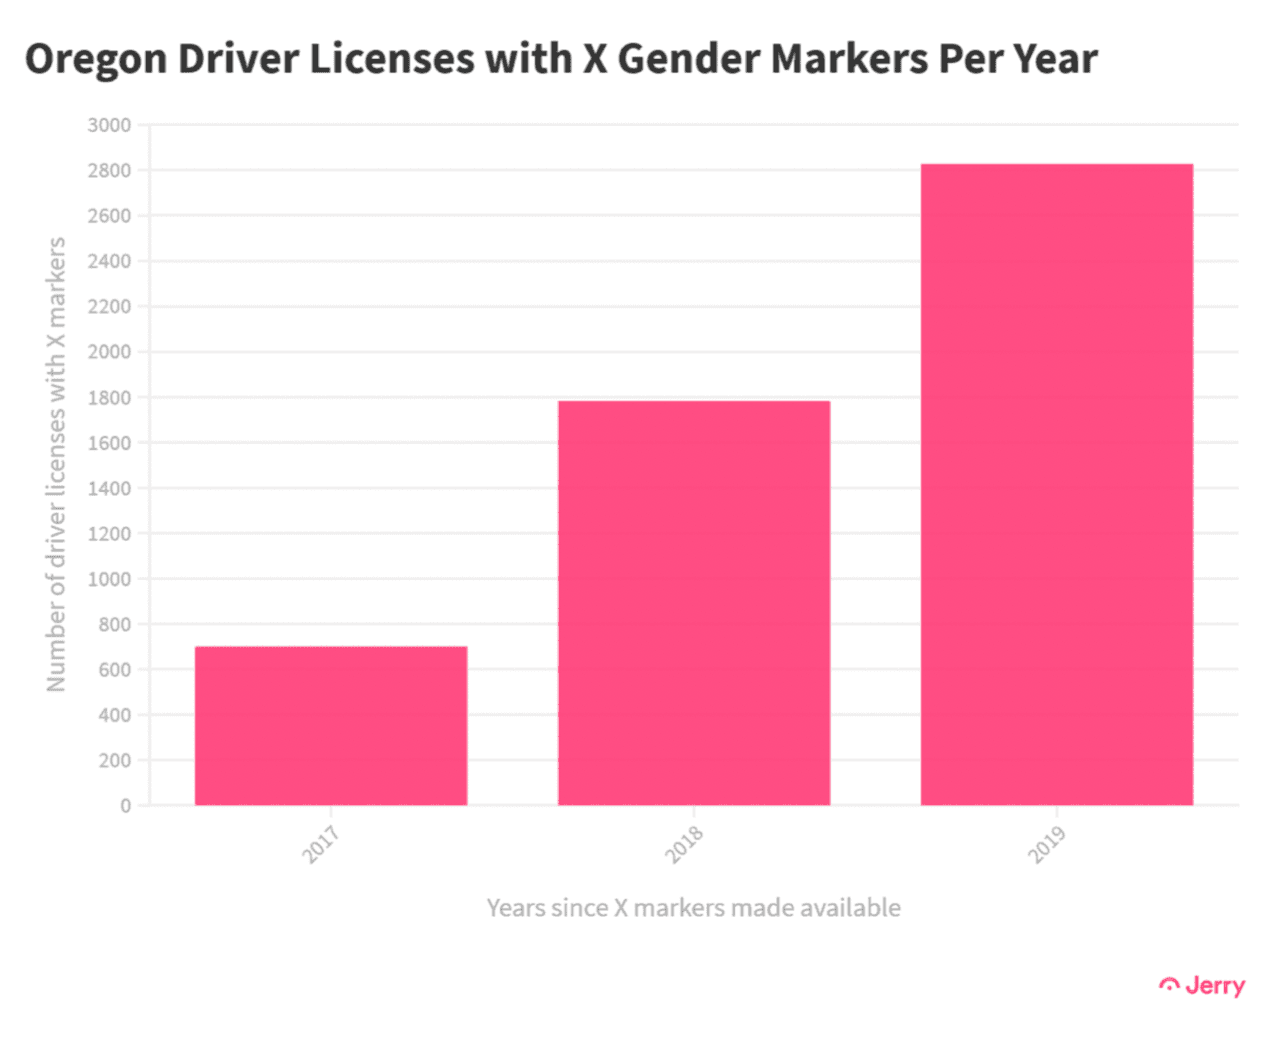 俄勒冈驾照每年X性别标记